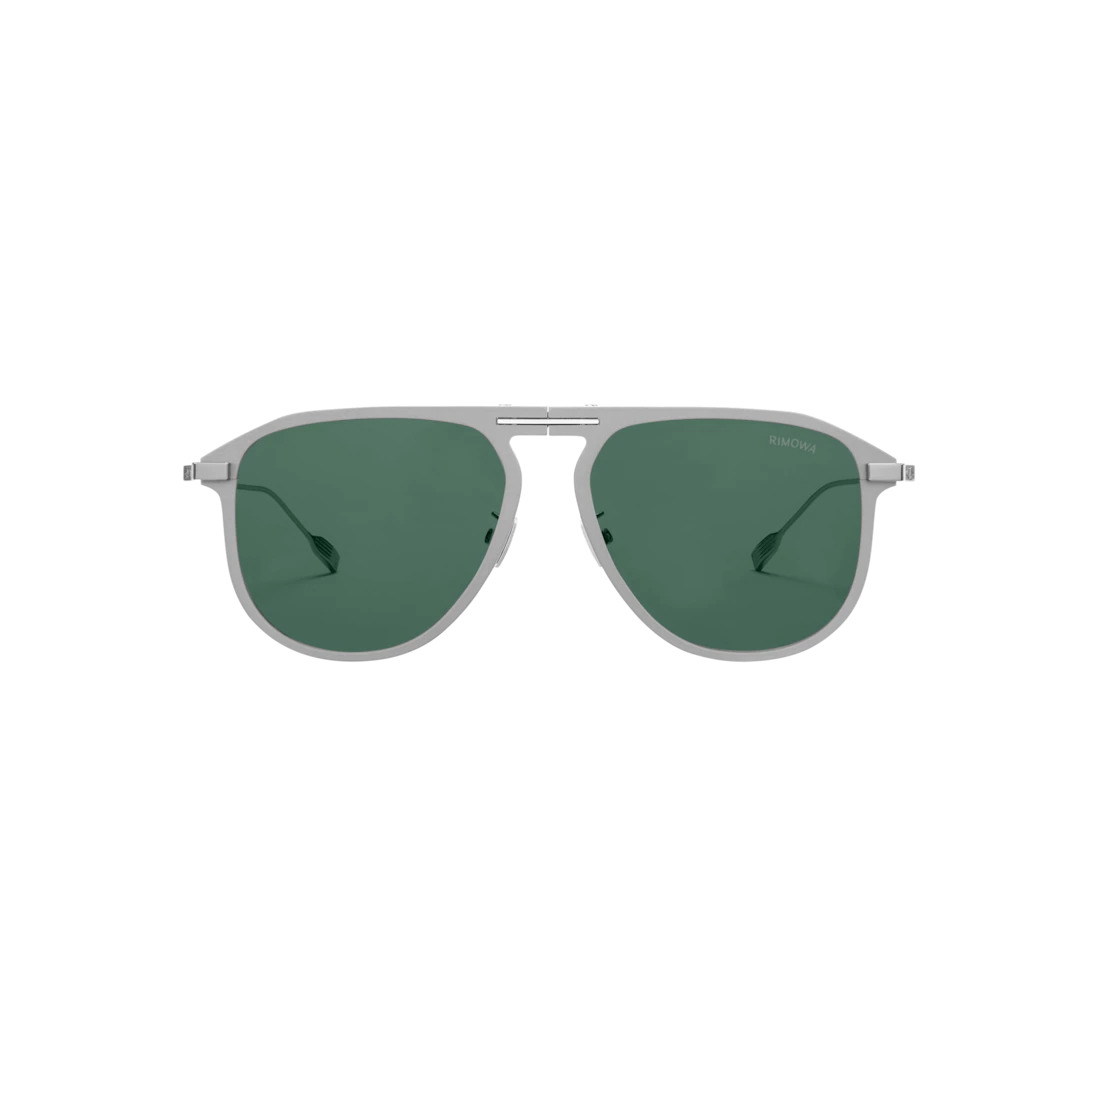 Eyewear Pilot Foldable Matte Silver Sunglasses - 1